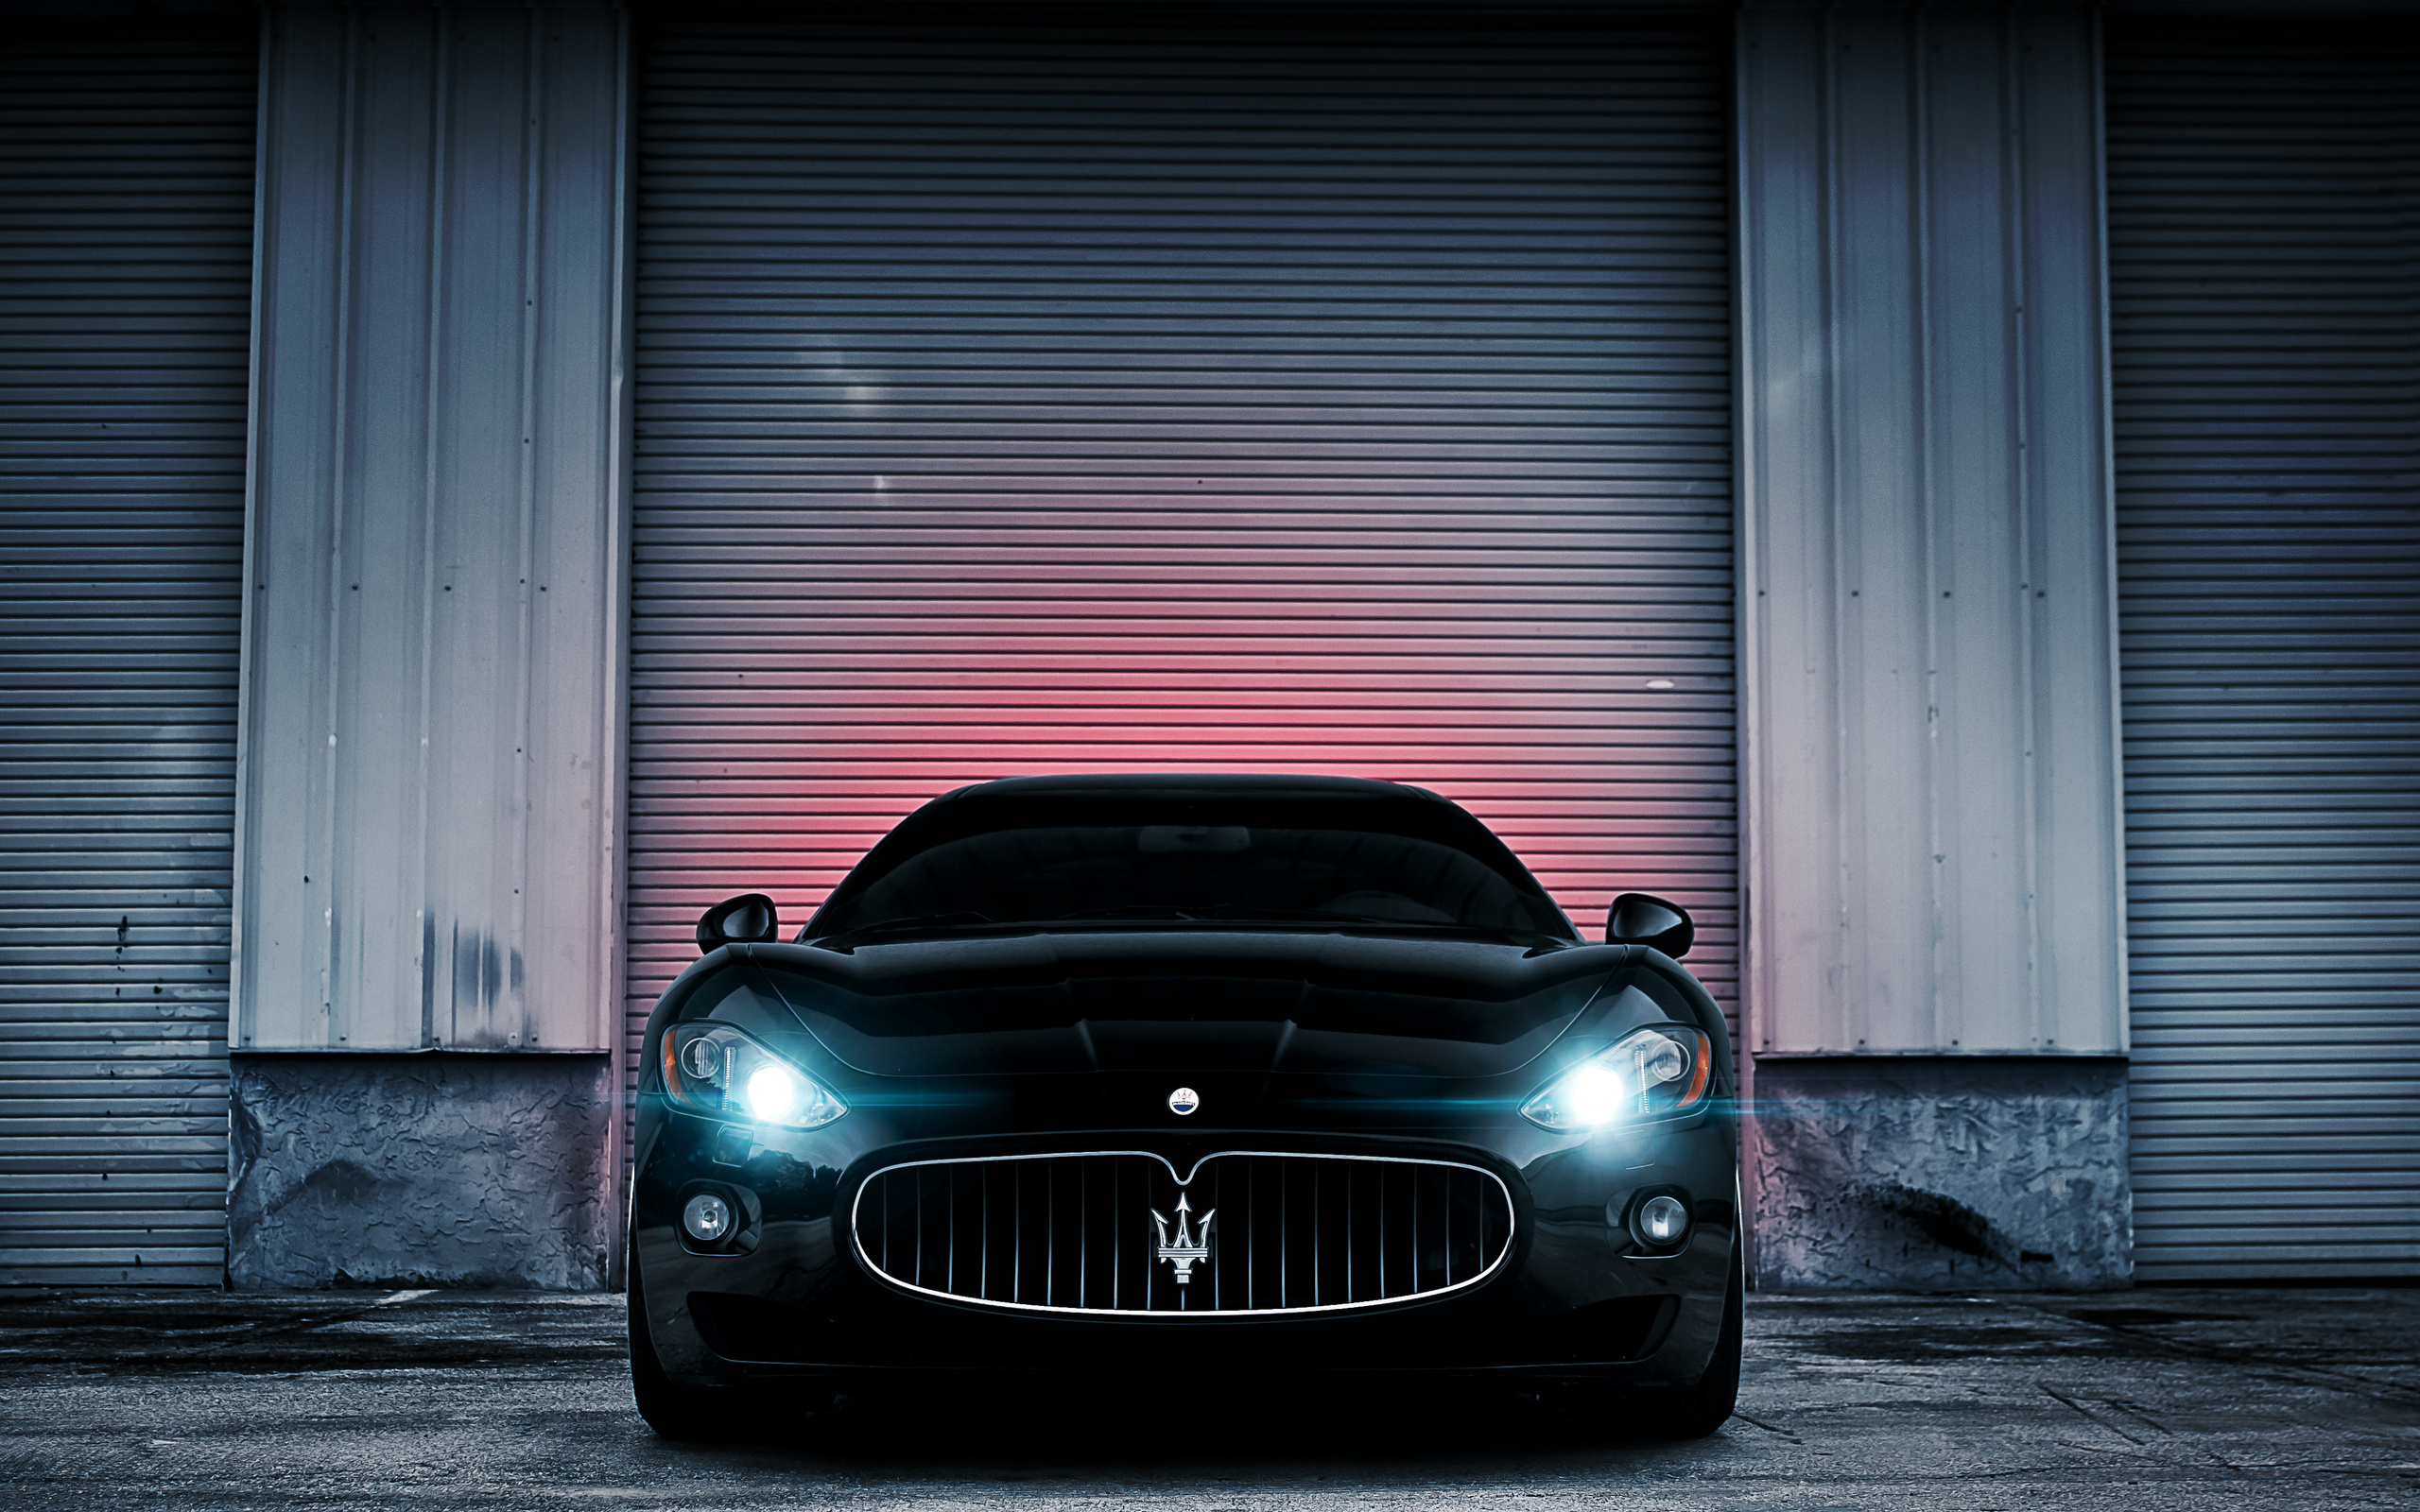 Maserati HD Wallpaper Background Image 2560x1600 2560x1600